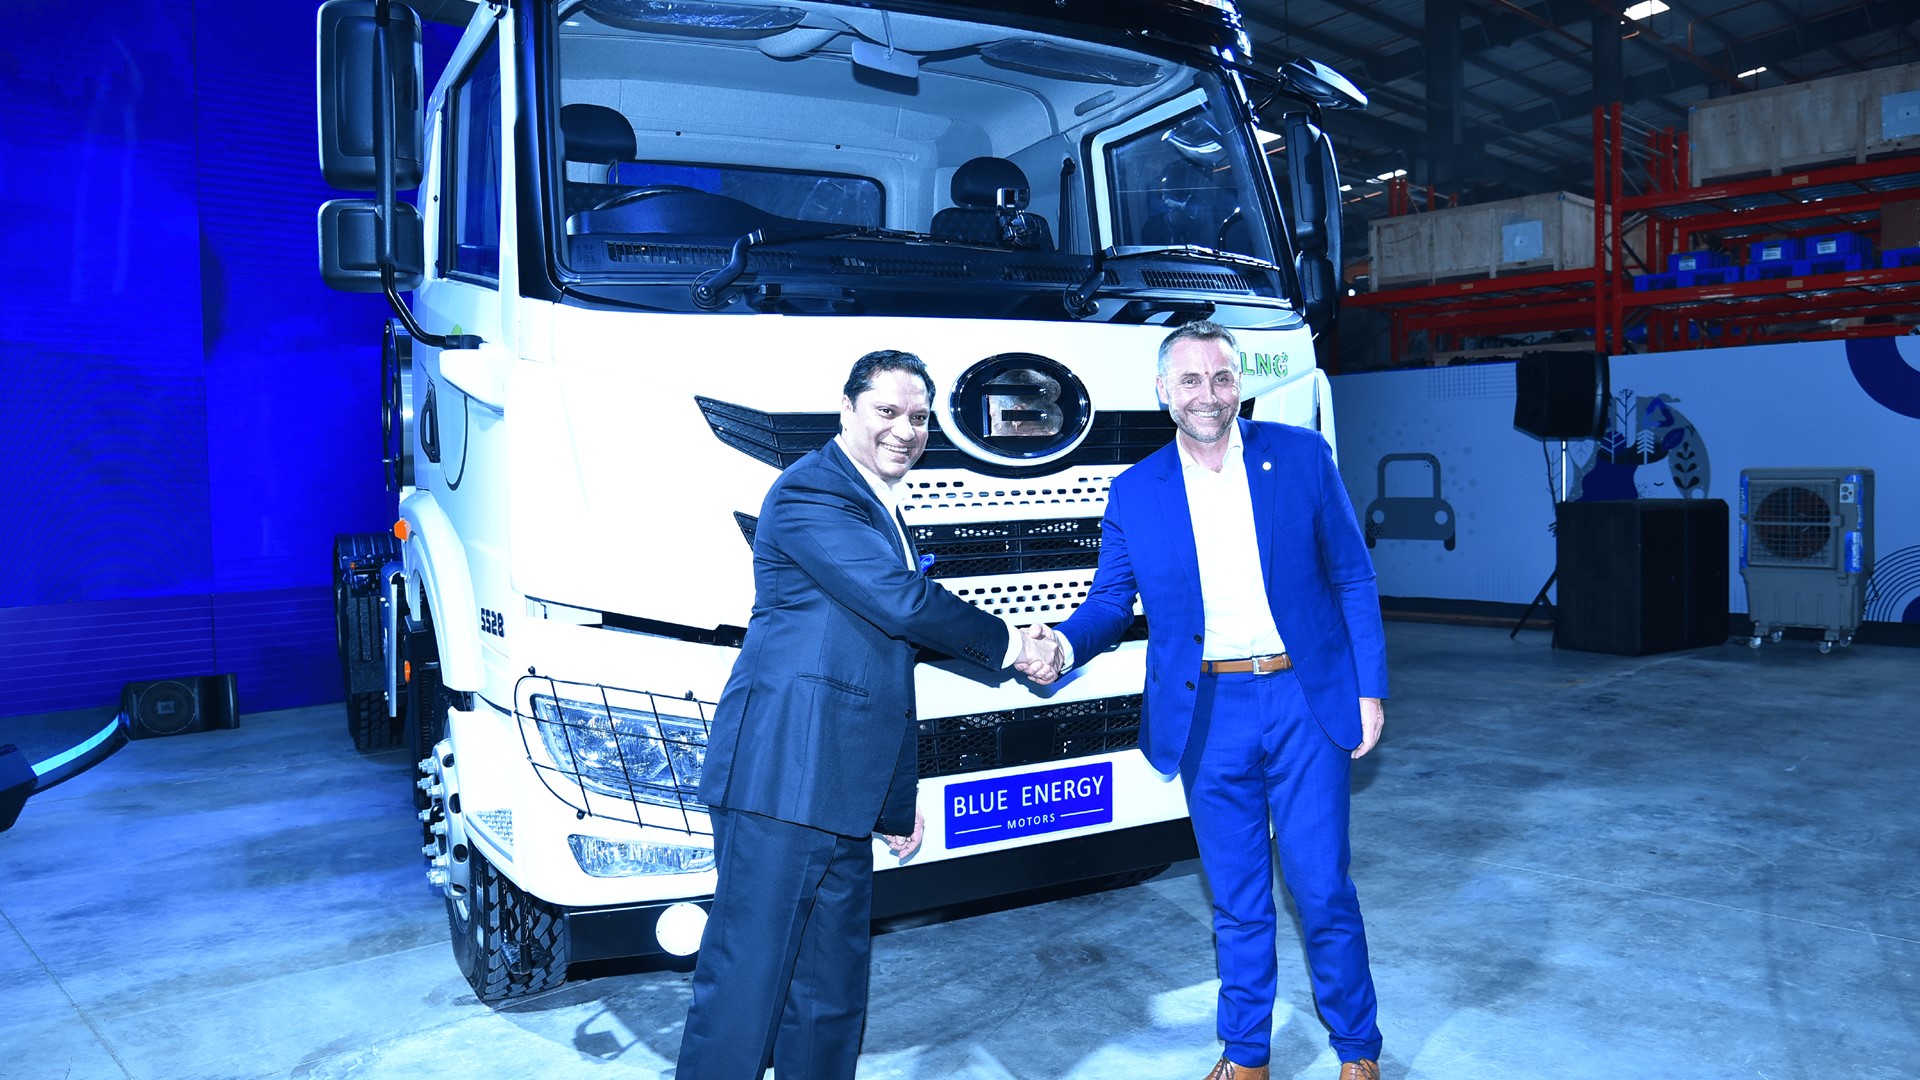 菲亚特动力科技助力印度第一辆天然气卡车下线